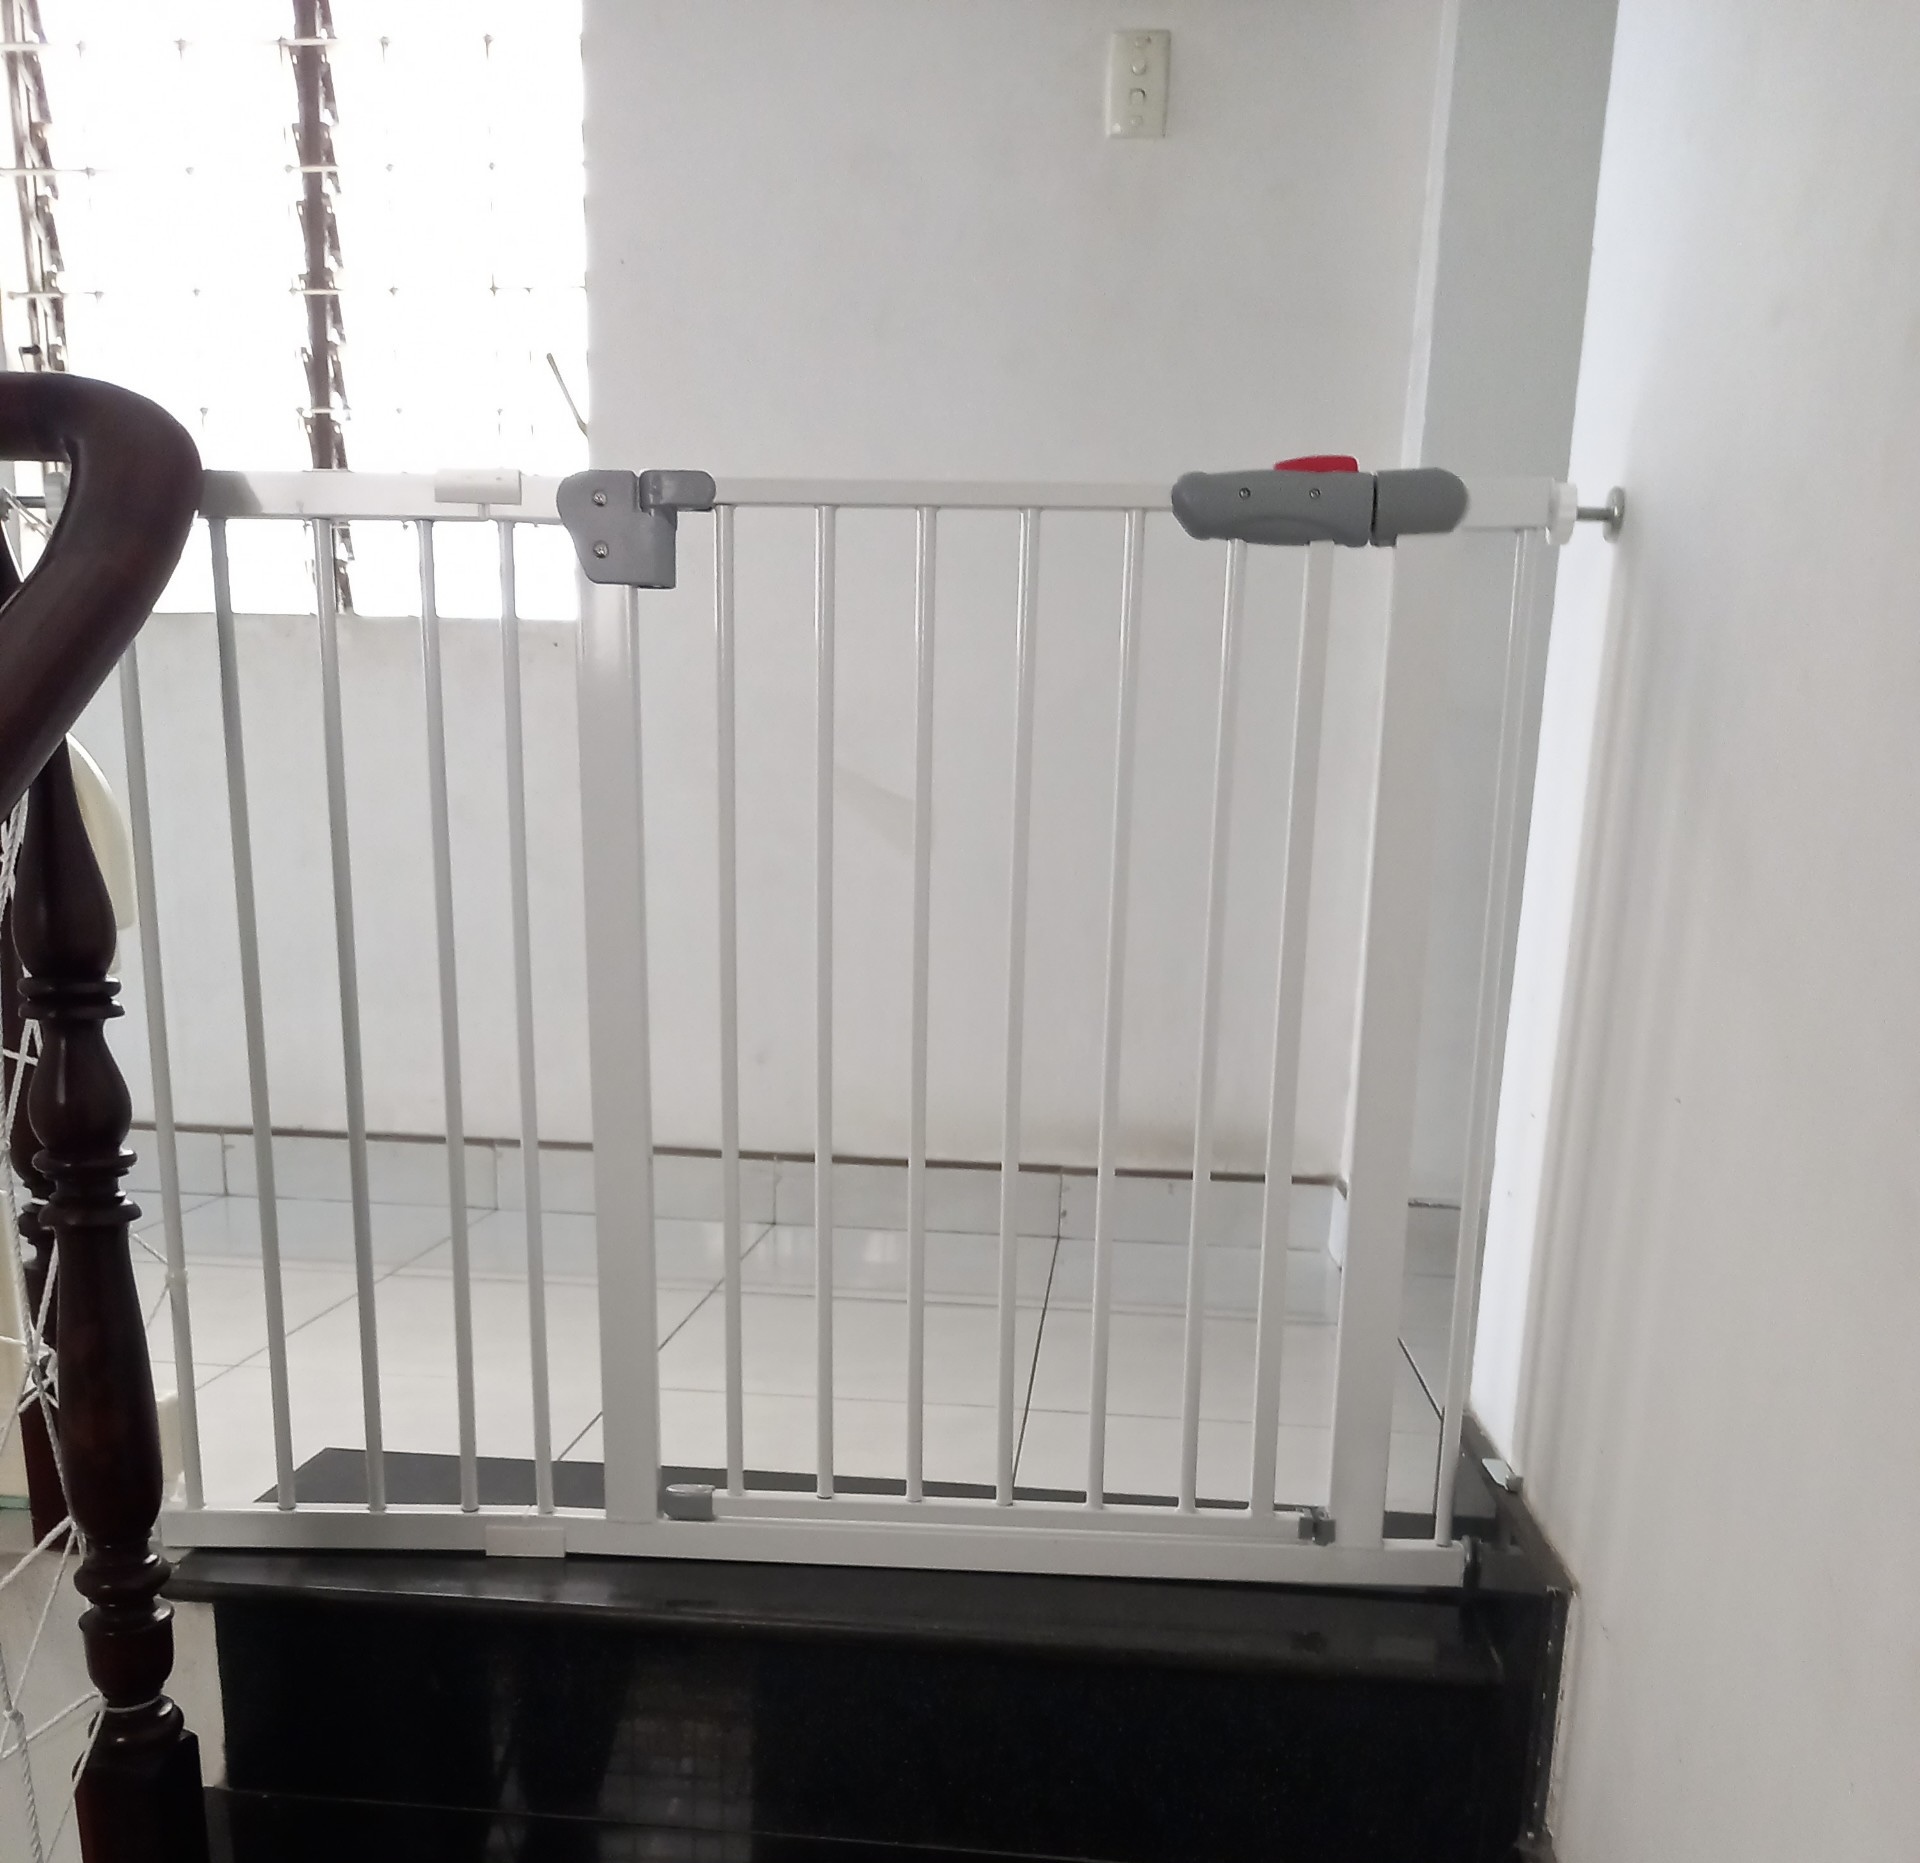 Thanh chắn cầu thang, Thanh chắn cửa an toàn cho bé (74cm-85cm KHÔNG CẦN KHOAN)